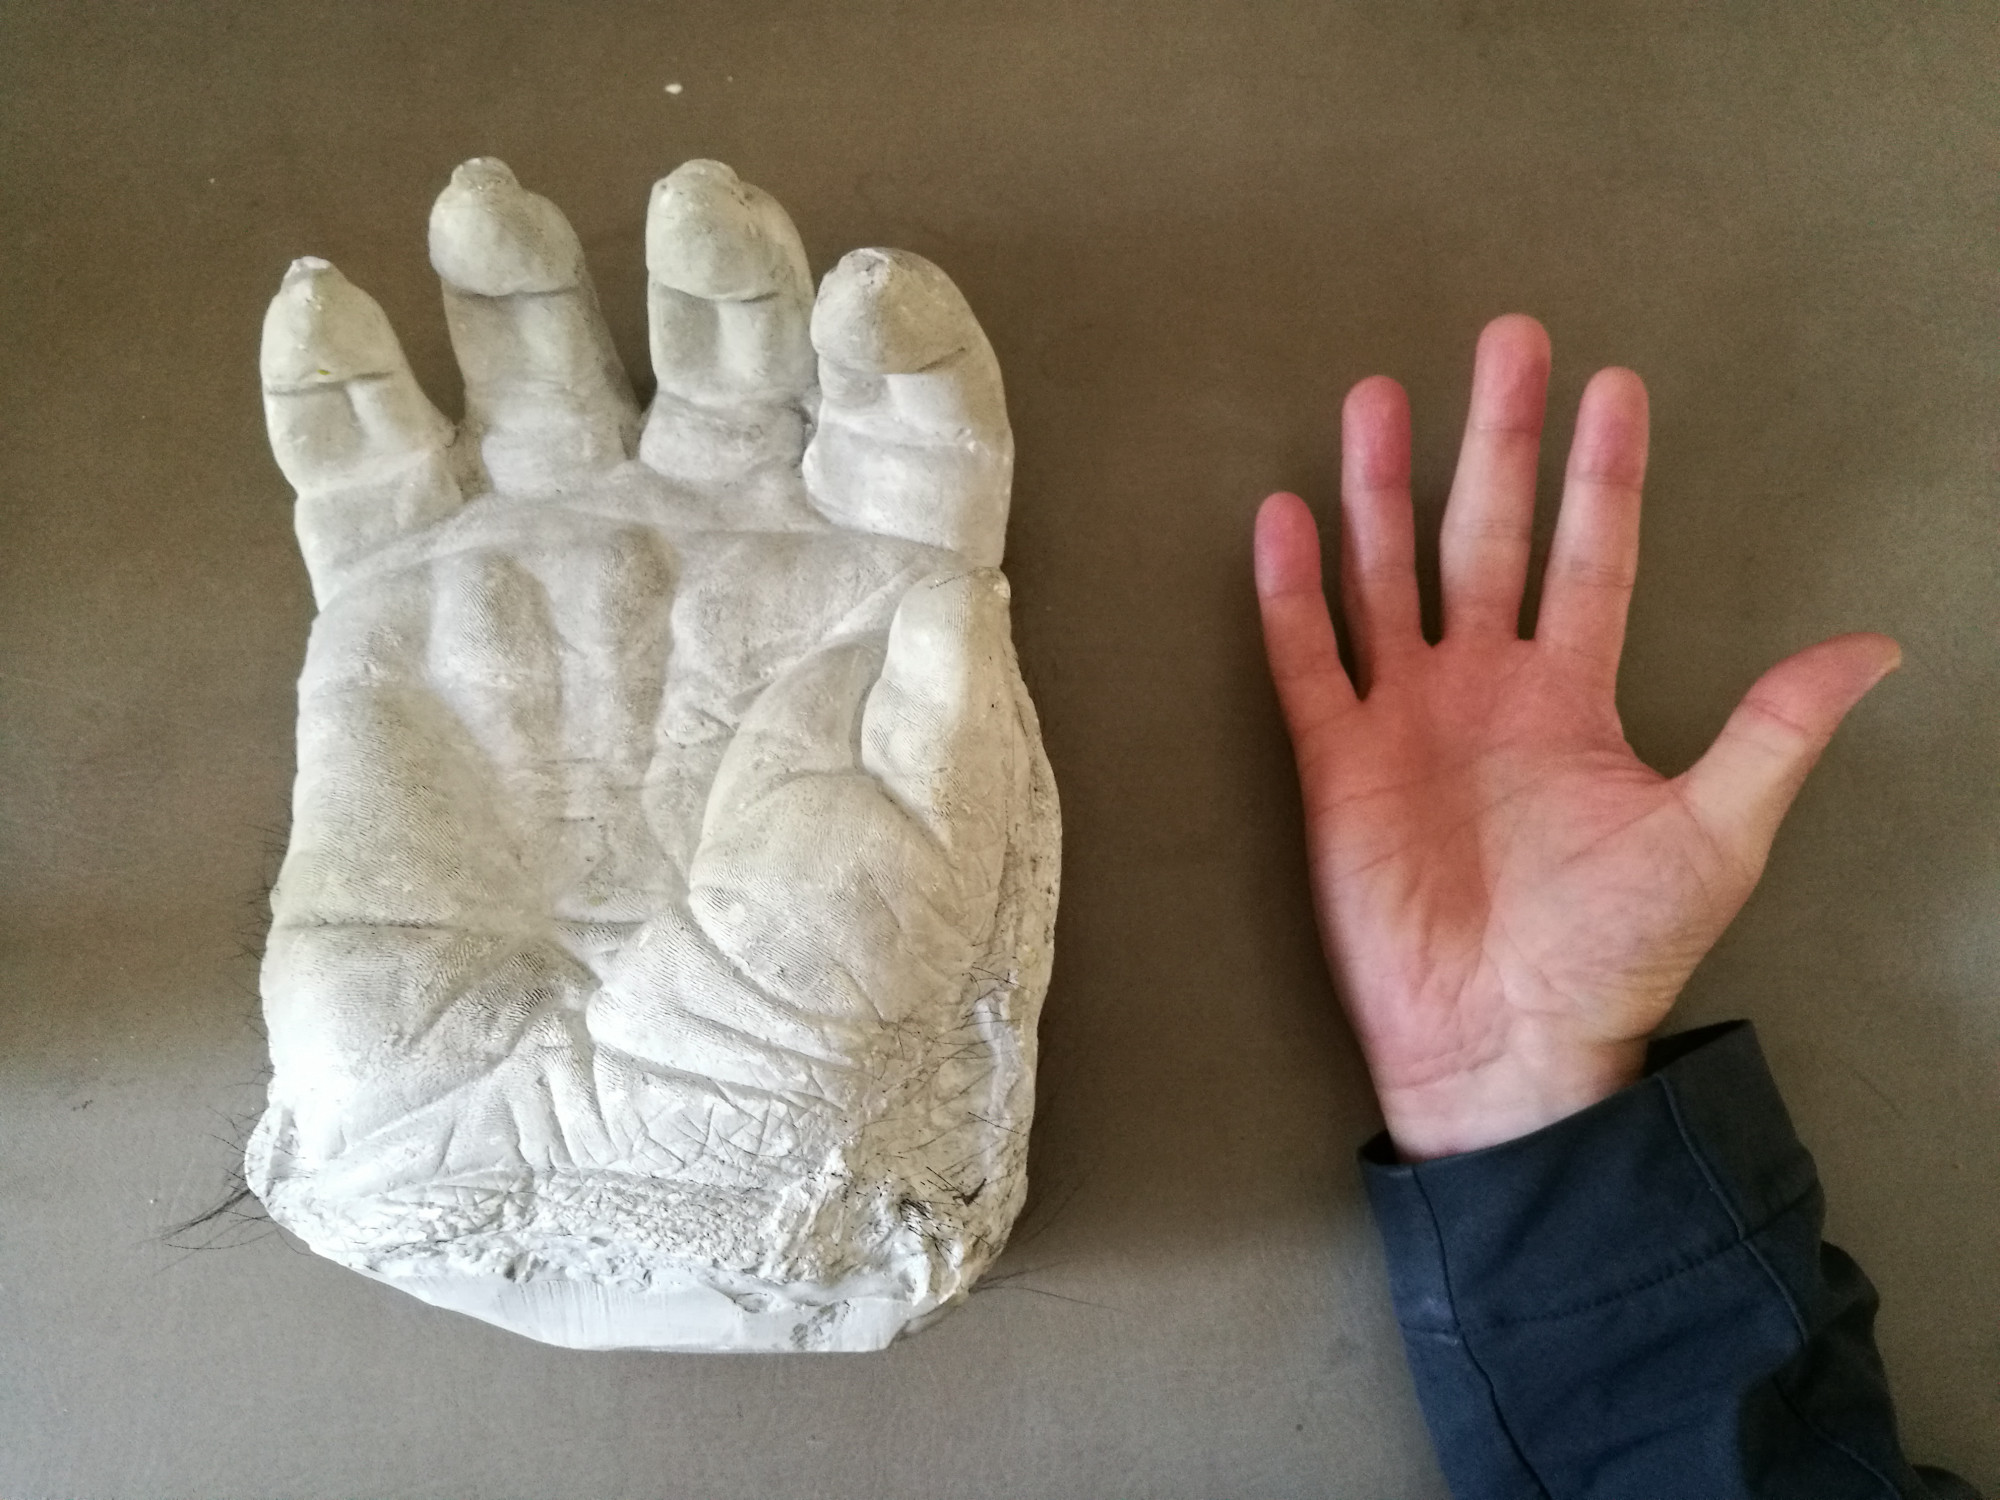 Handabguss aus Gips des Gorillas "Bobby" aus Vogelperspektive mit einer daneben gehaltenen menschlichen Hand.